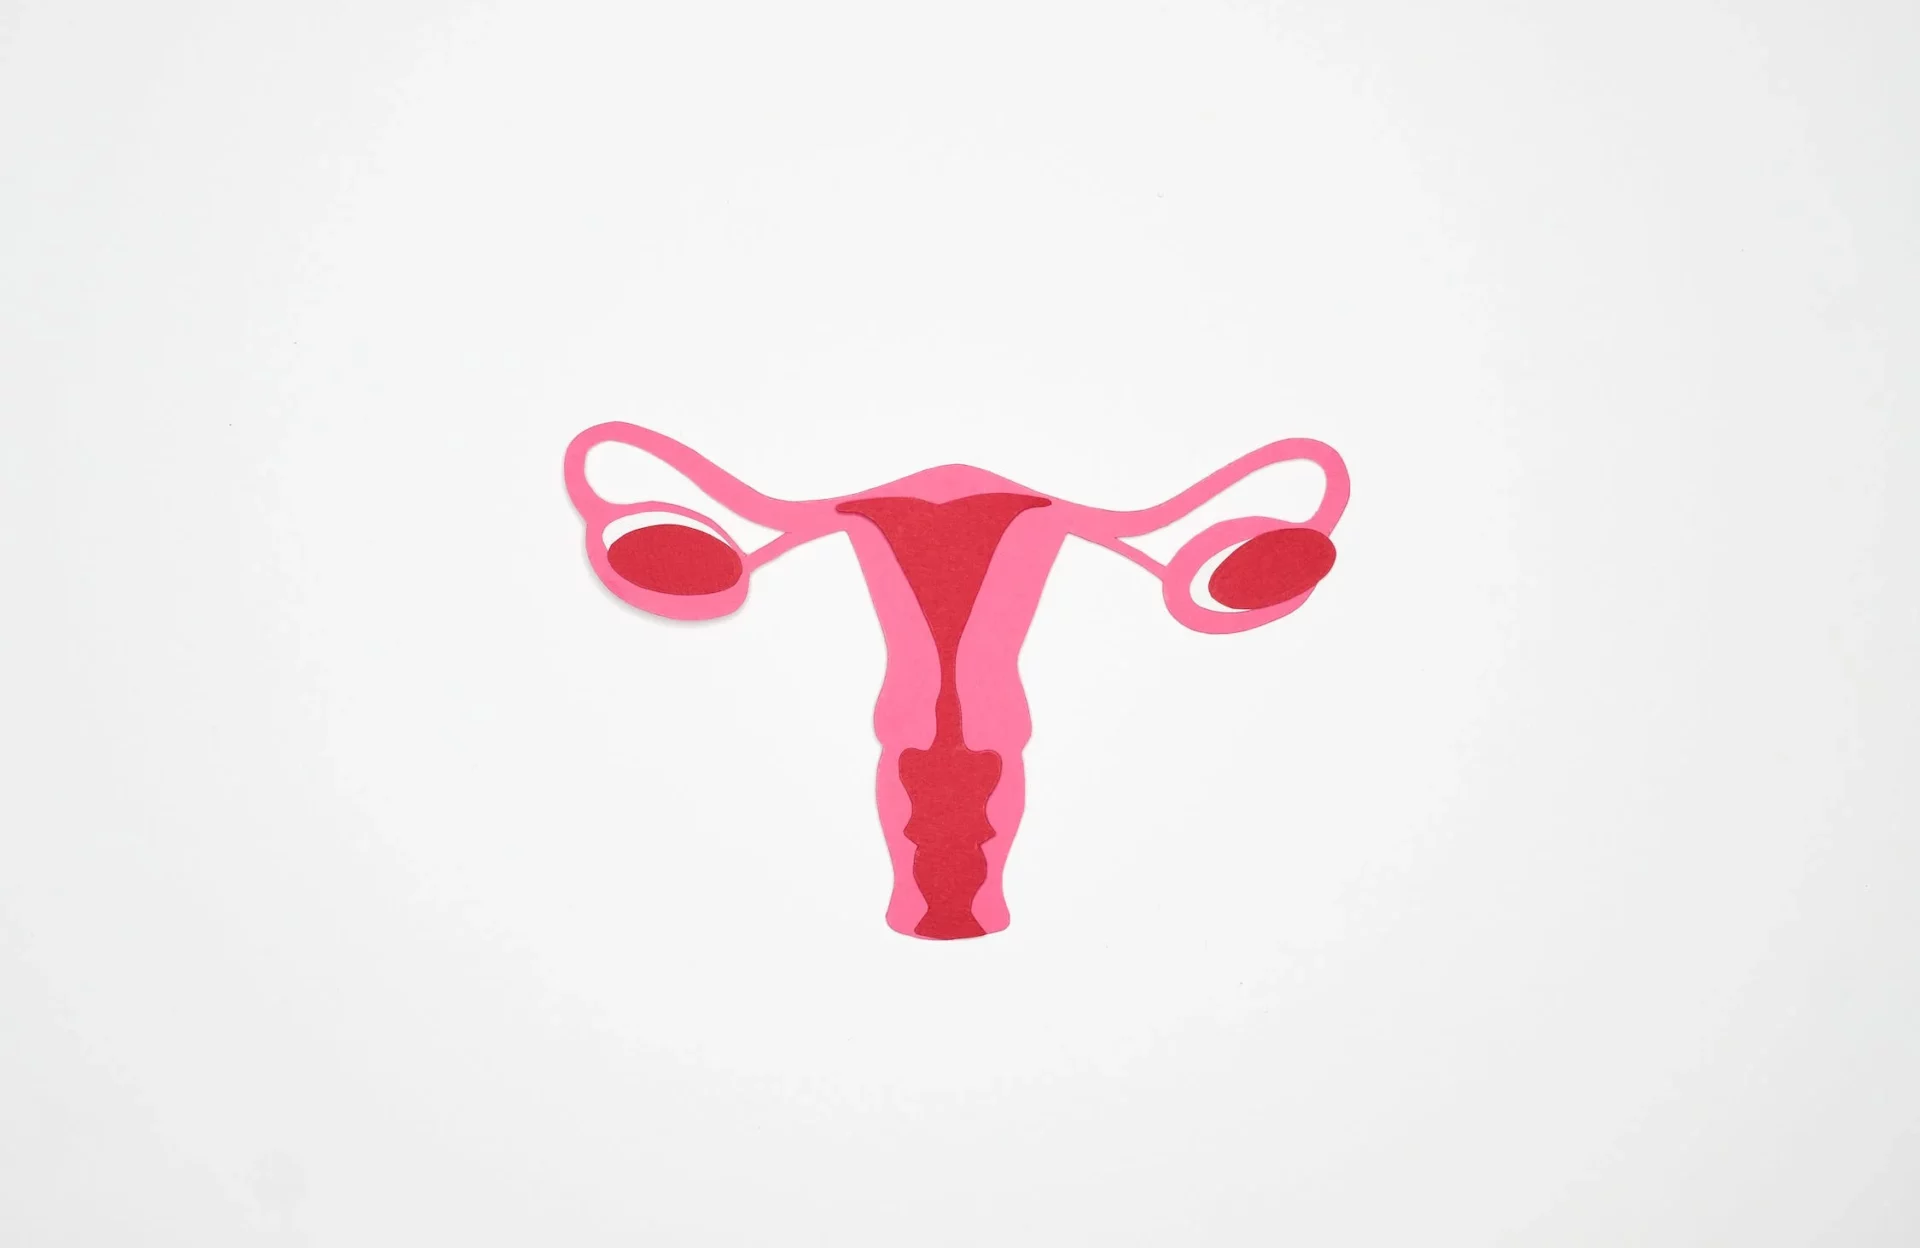 Wkładka Domaciczna: Skuteczna i Wygodna Opcja Antykoncepcji